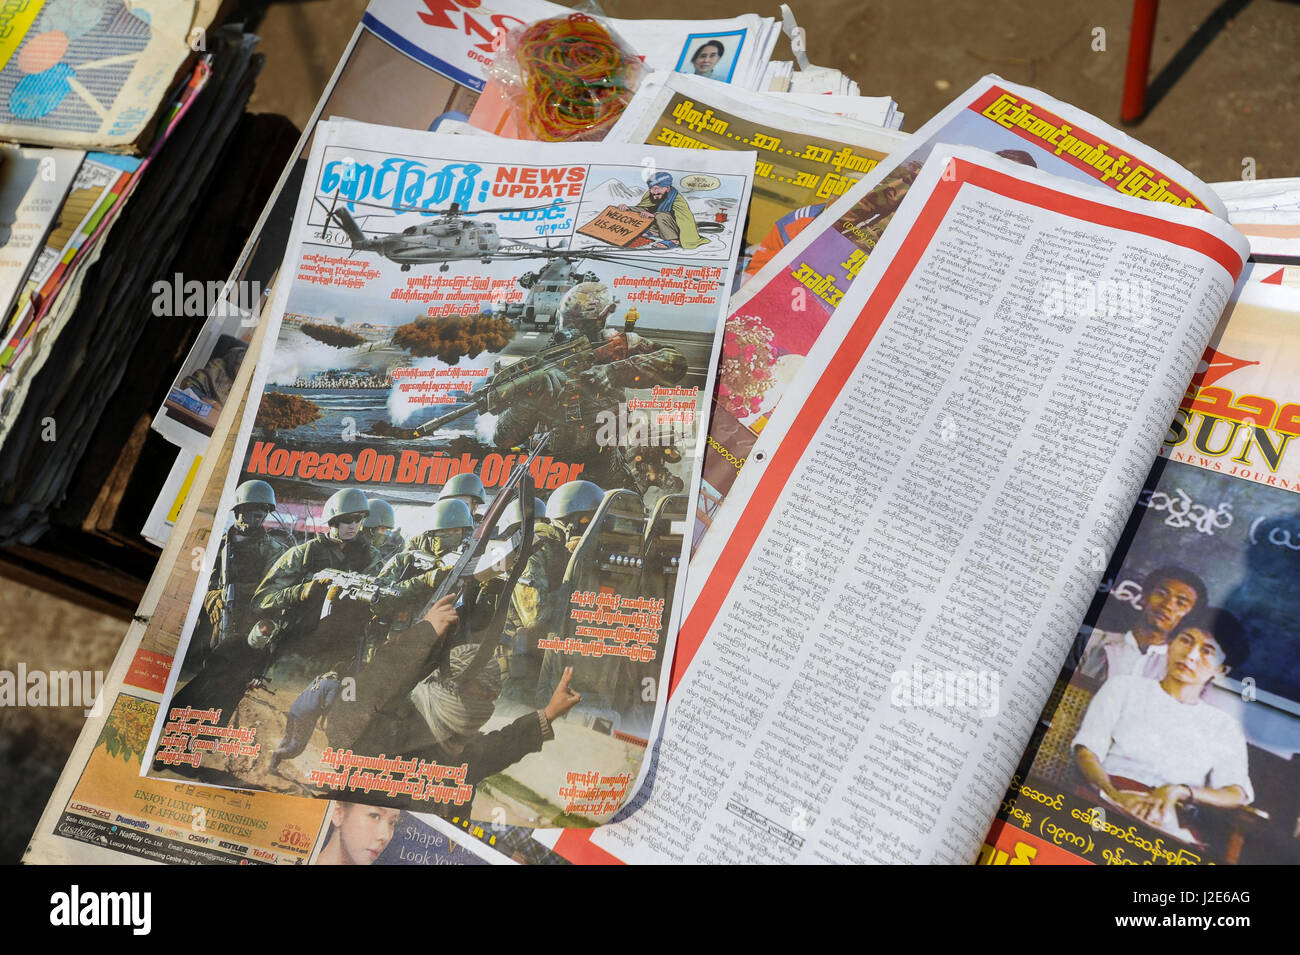 06.04.2014, Yangon, Republik der Union Myanmar, Asien - die Titelseite einer Zeitung berichtet über die Gefahr des Ausbruchs des Krieges in Korea. Stockfoto